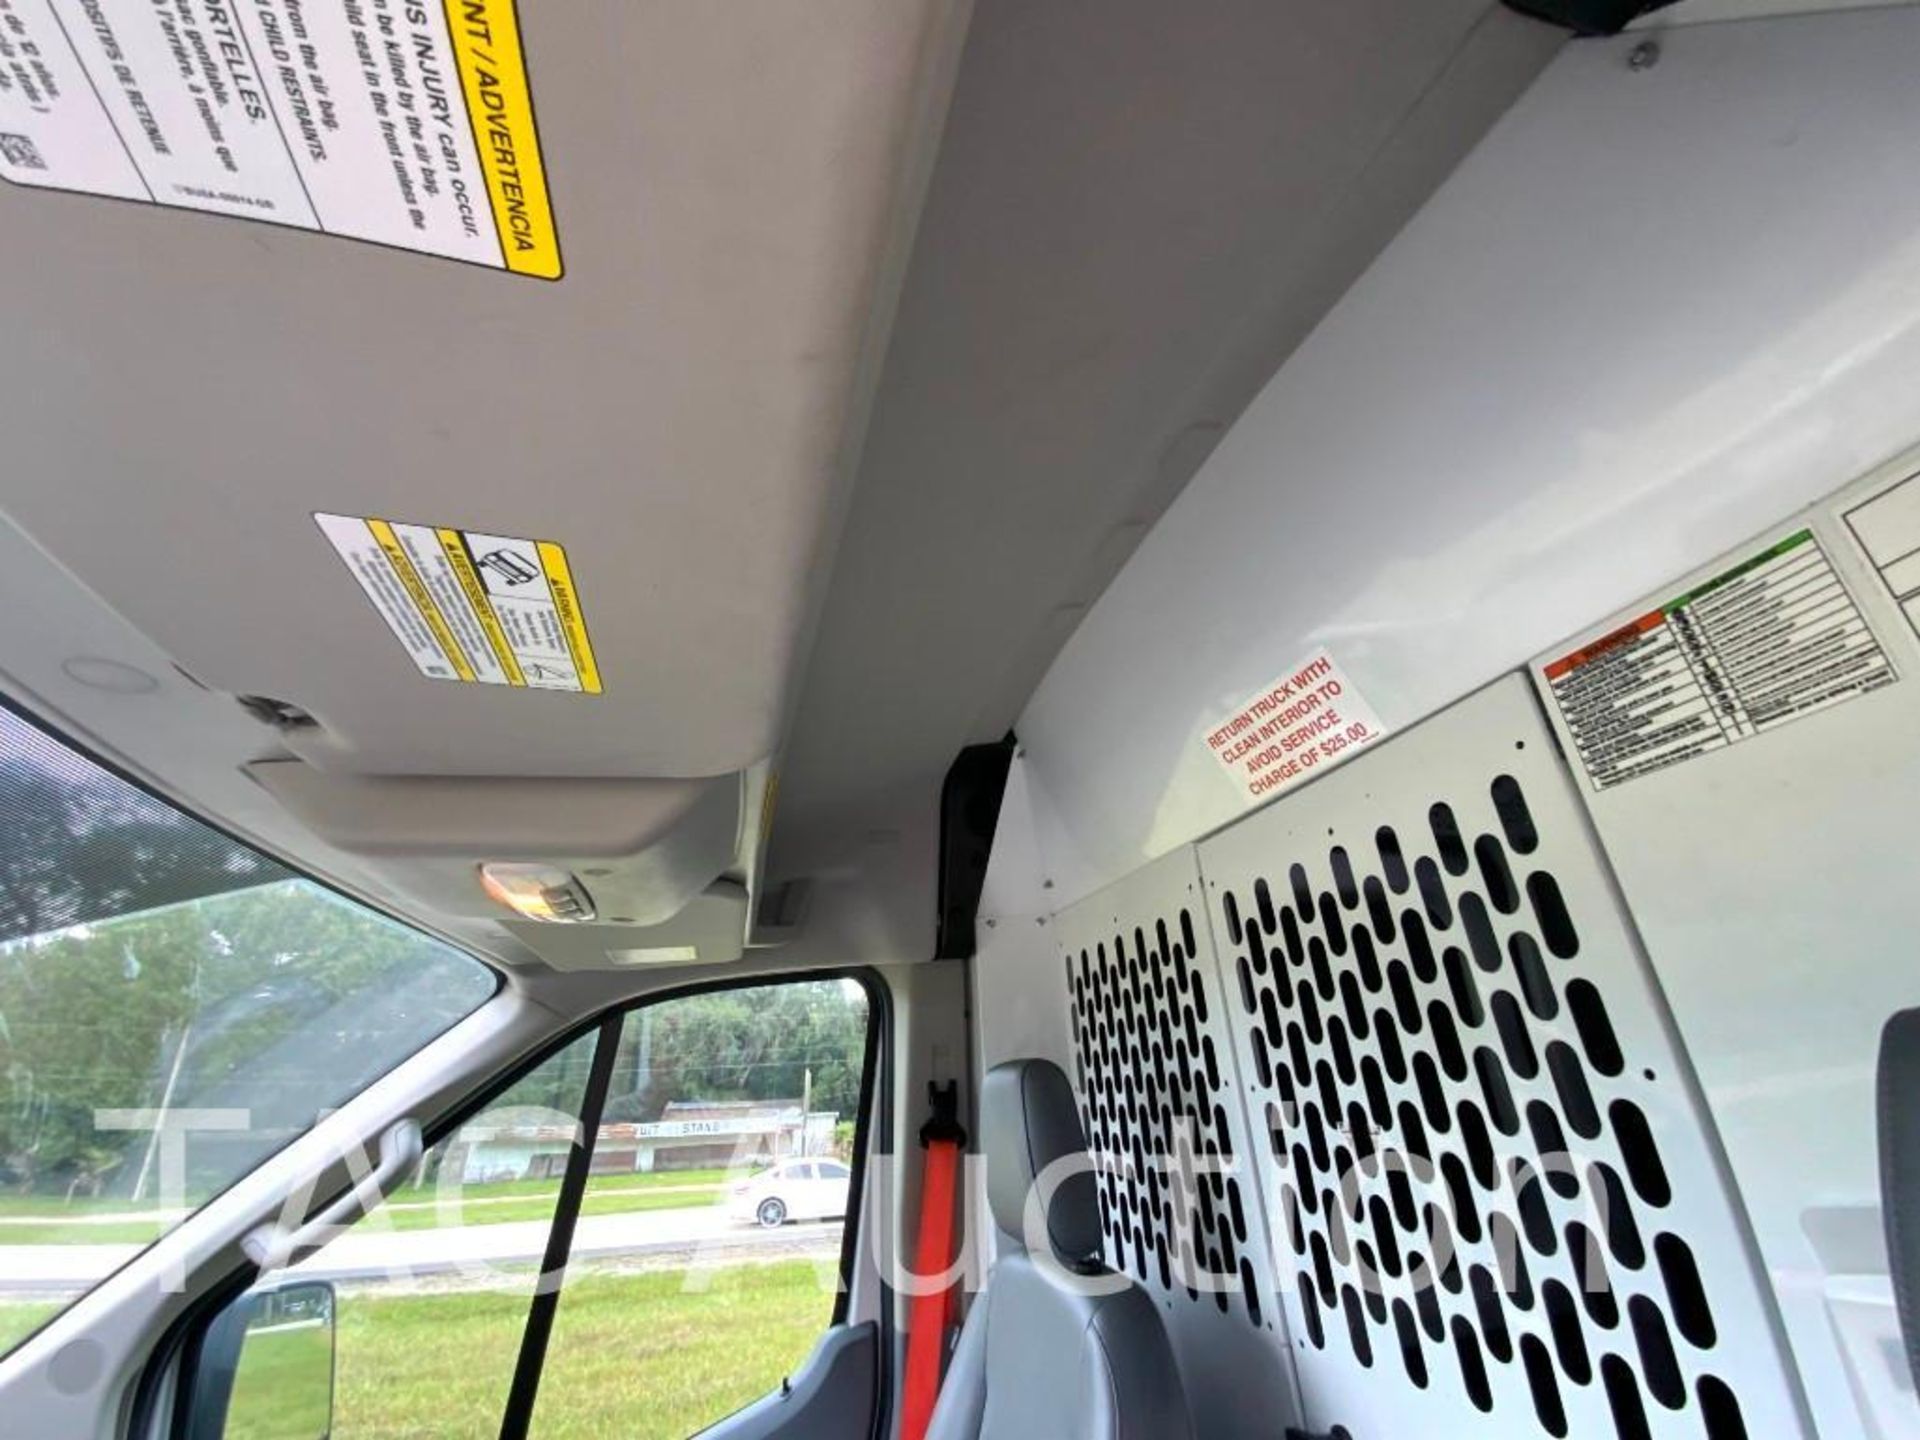 2019 Ford Transit 150 Cargo Van - Image 12 of 54